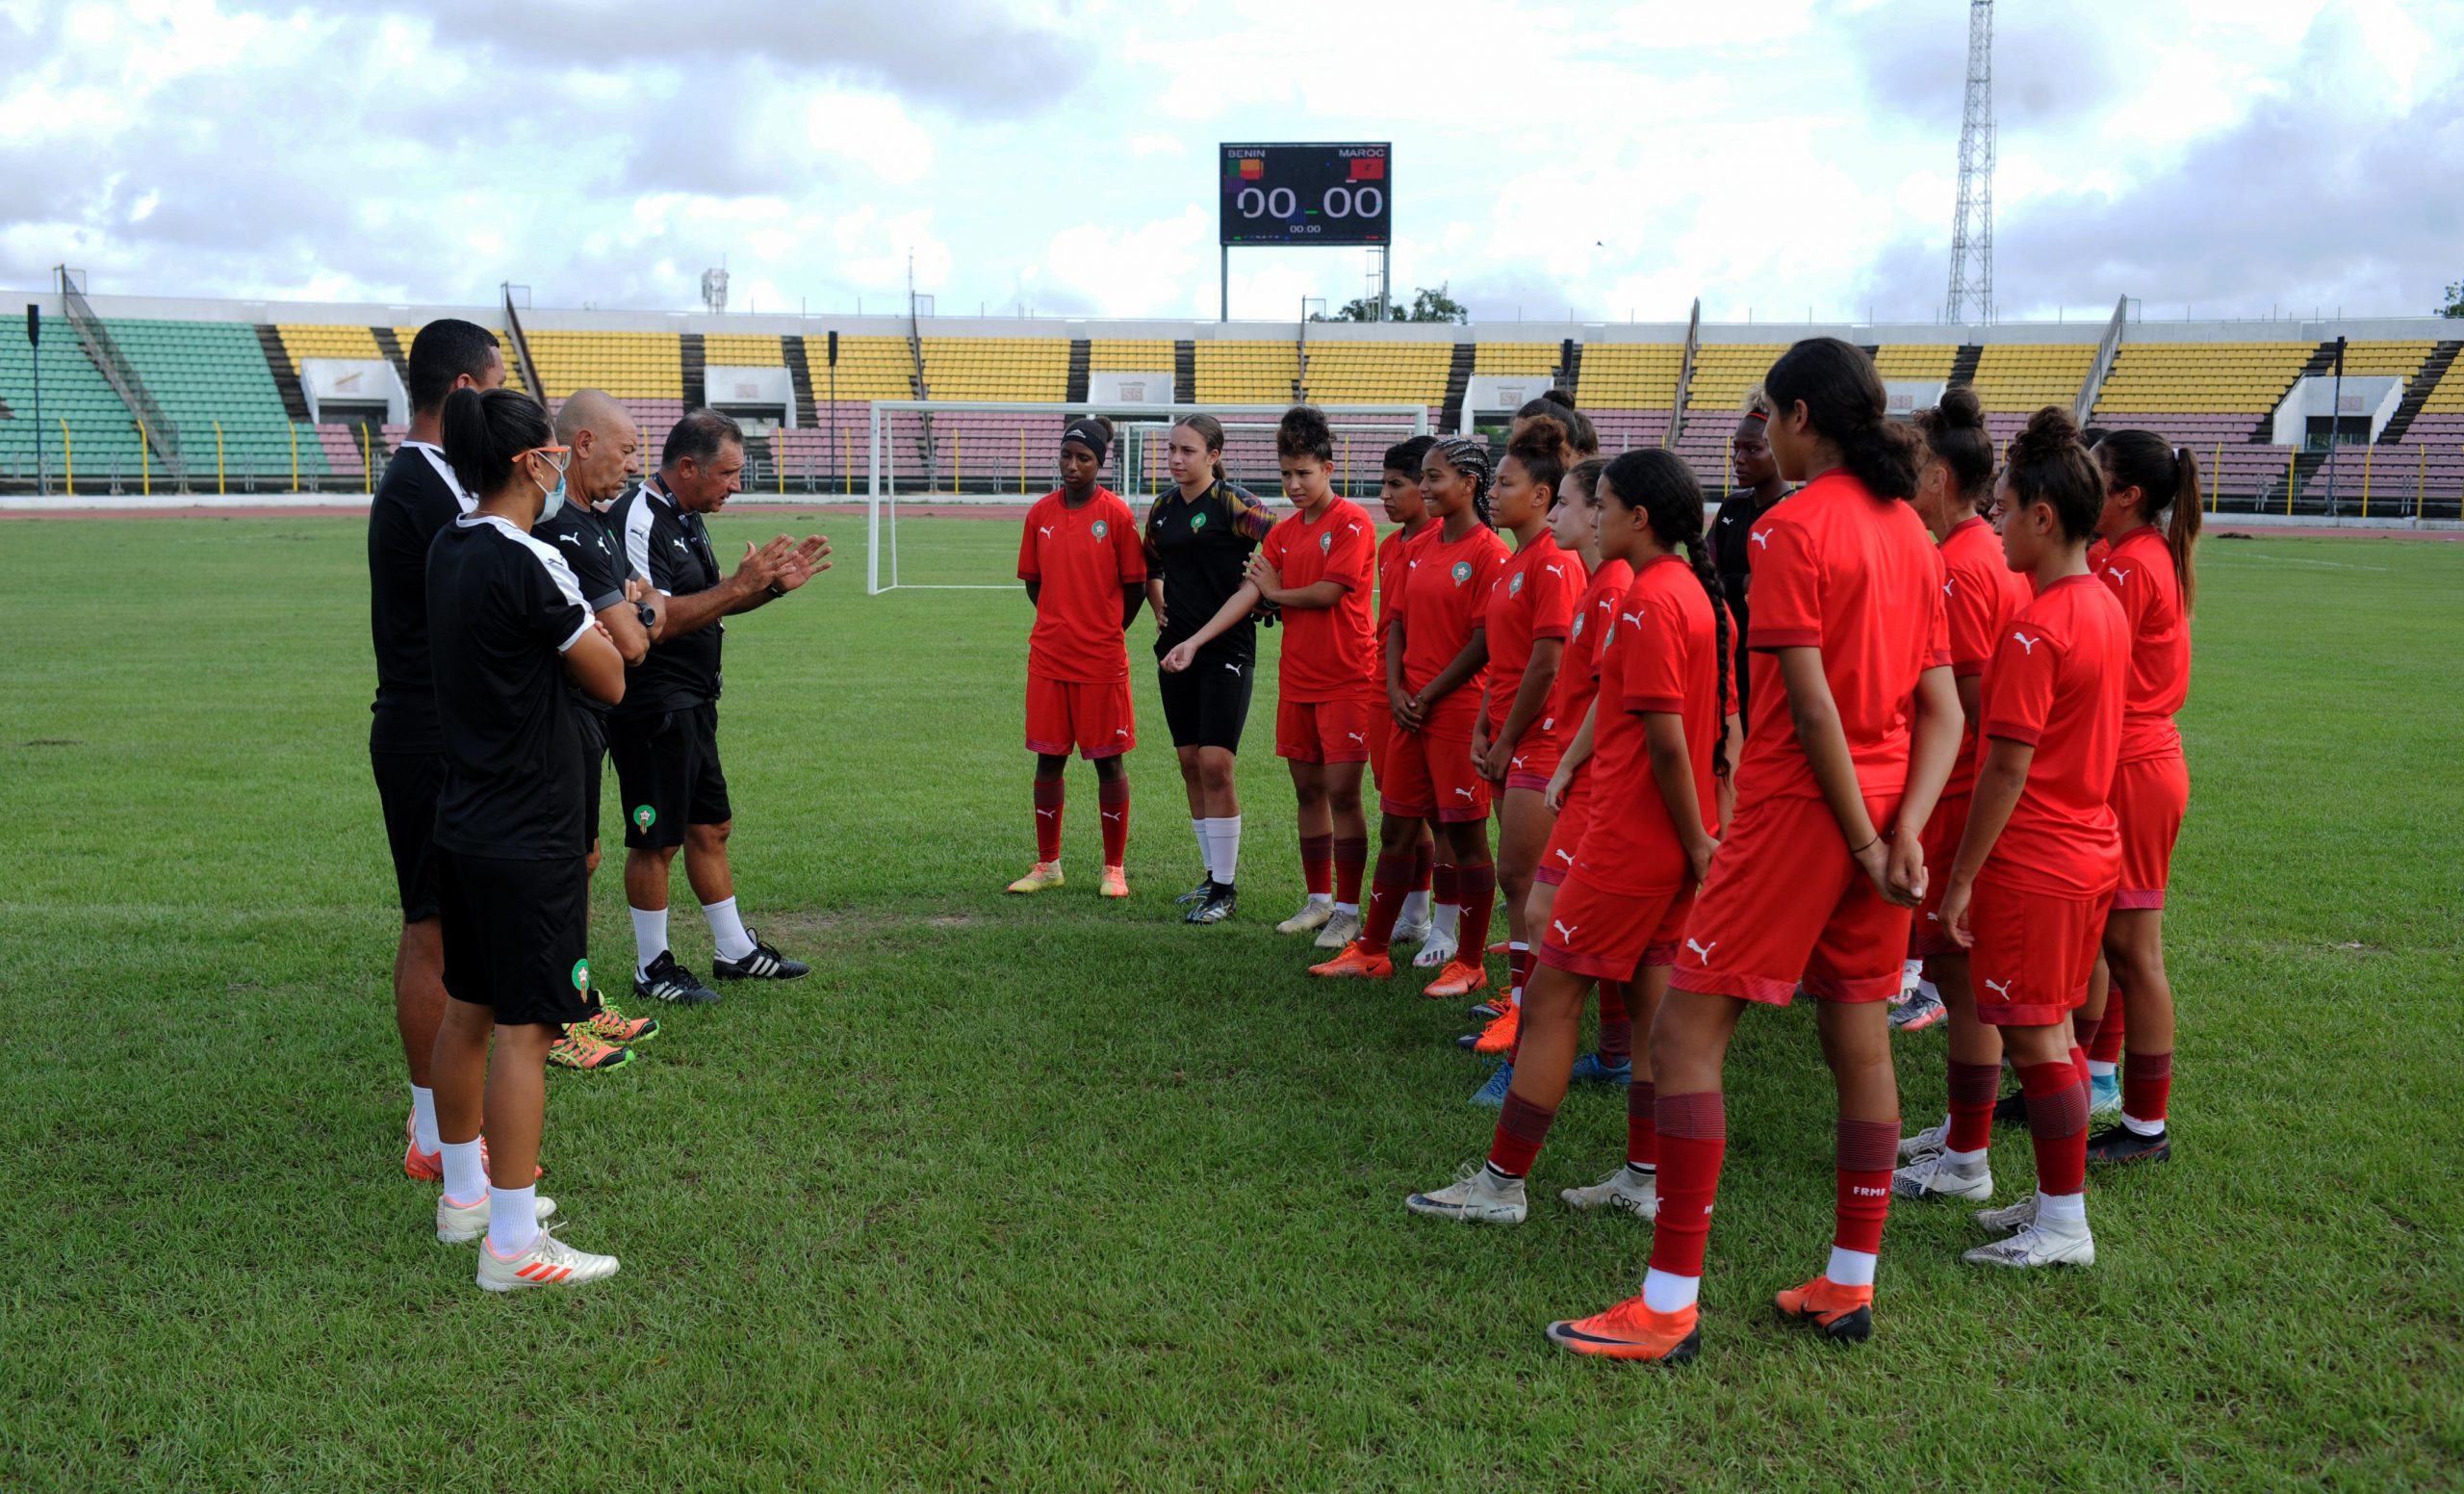 المنتخب الوطني لكرة القدم النسوية لأقل من 20 سنة يخوض آخر حصة تدريبية قبل لقاء البنين